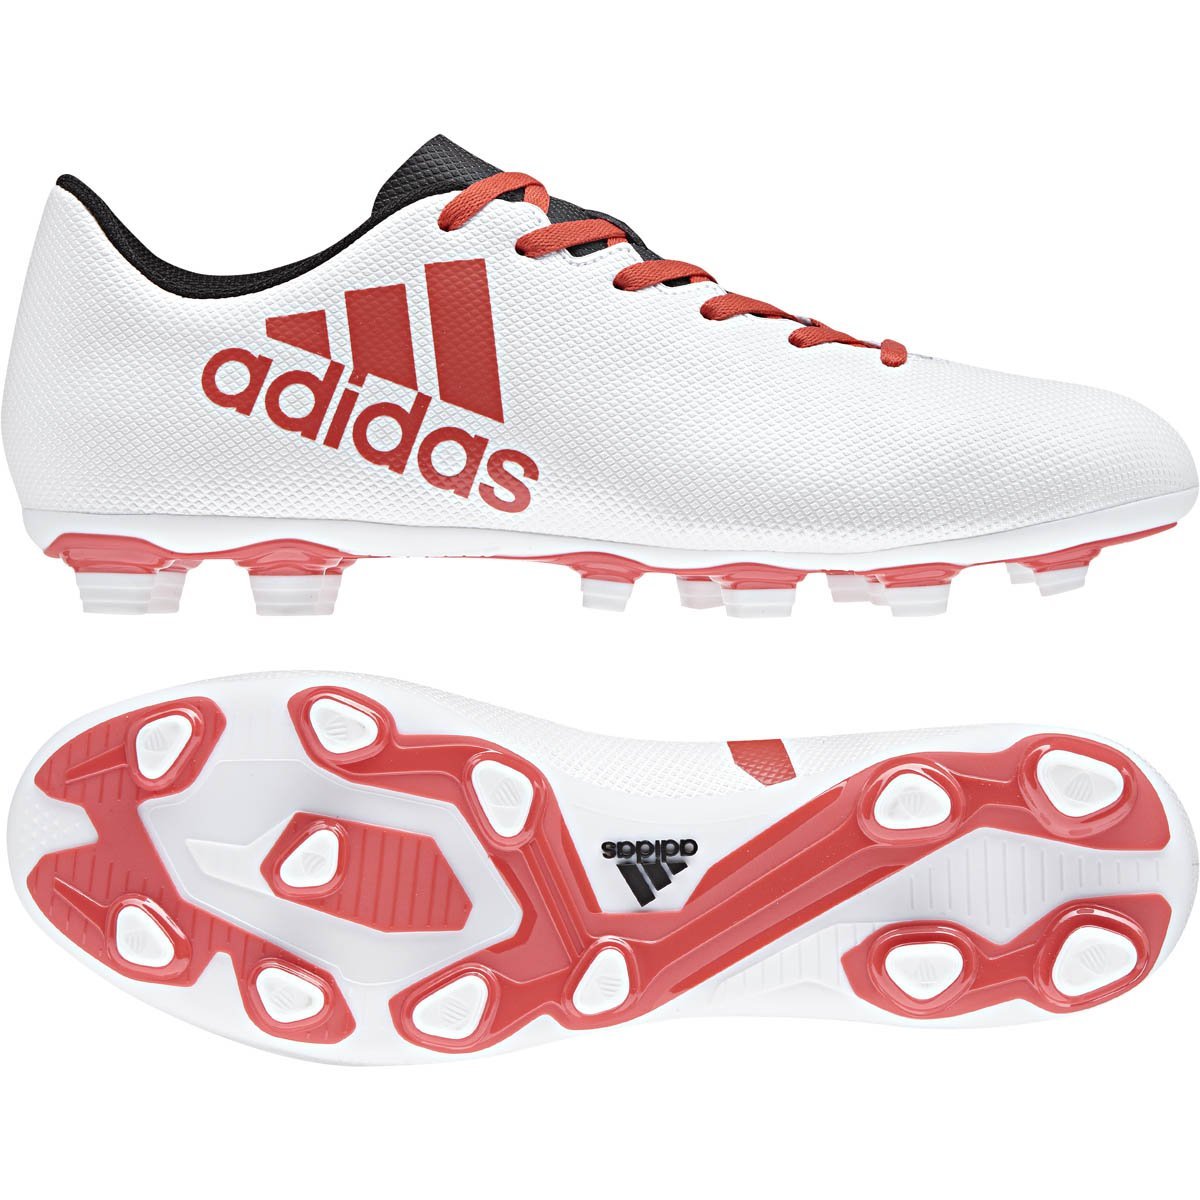 Calzado Soccer X 17.4 Fxg Adidas - Caballero